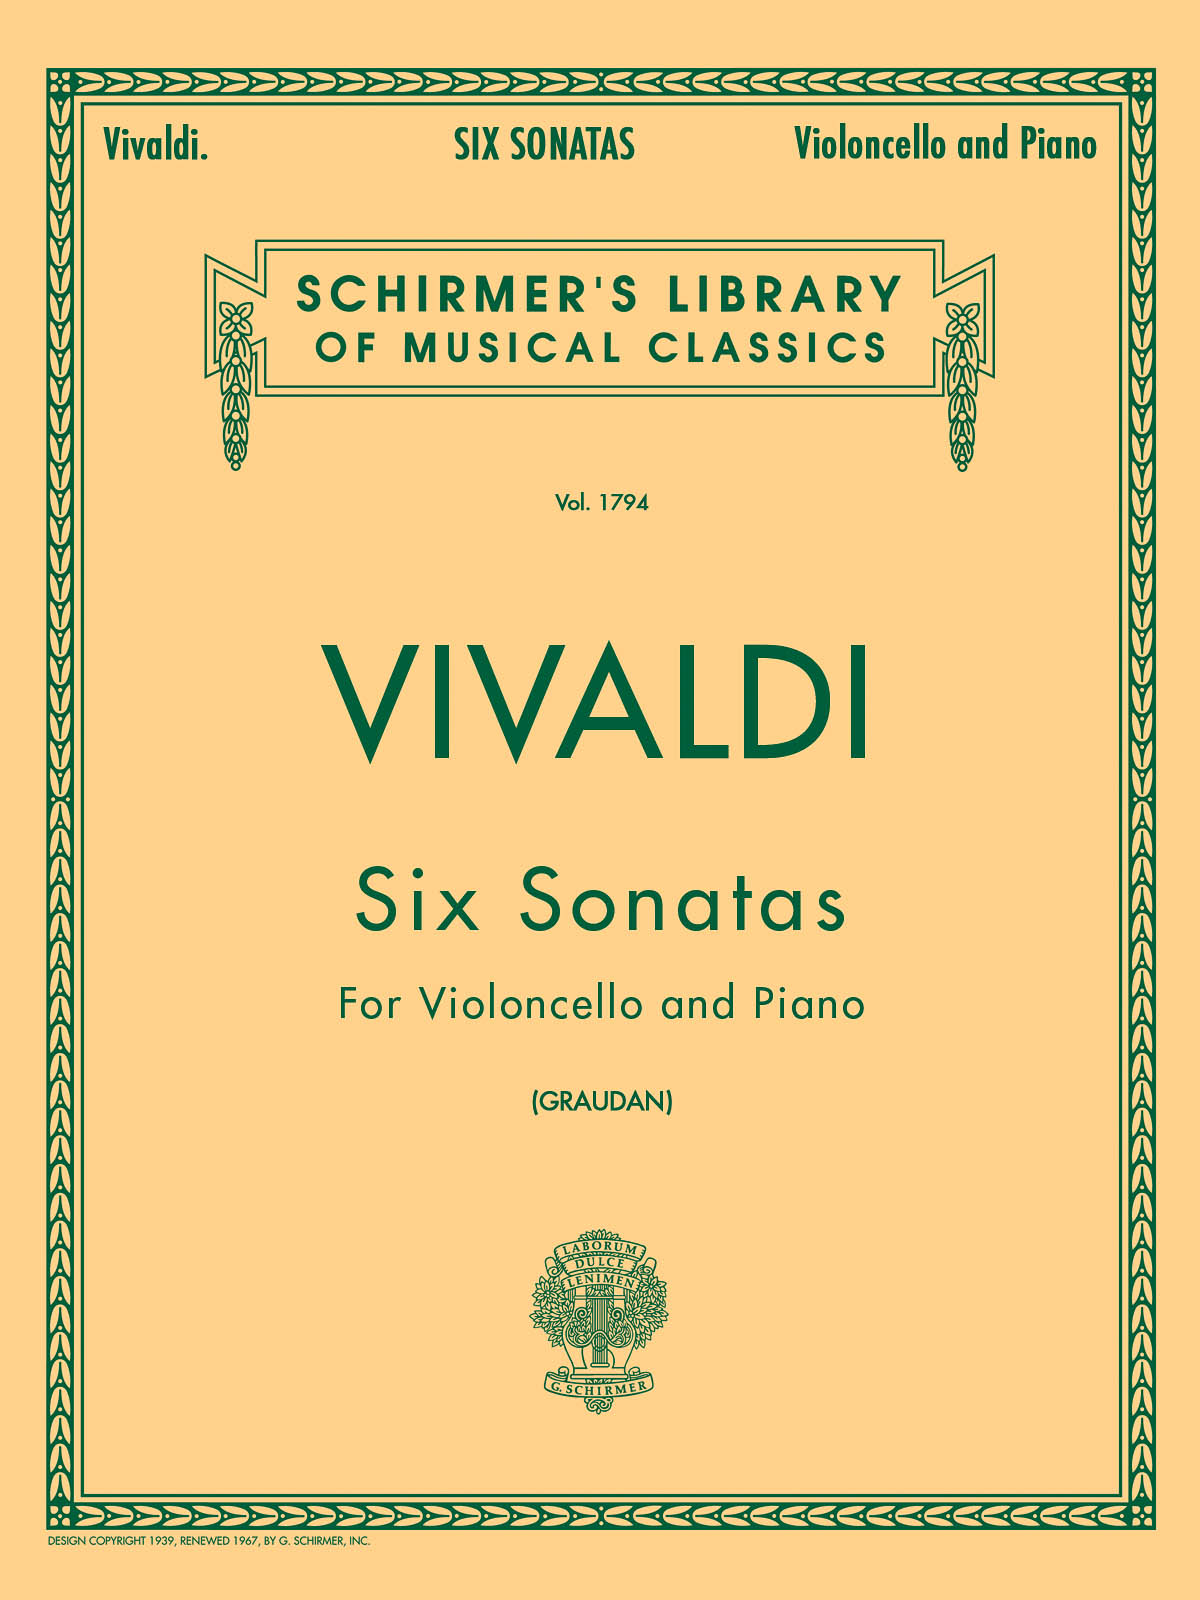 Vivaldi: Six Sonatas For Cello